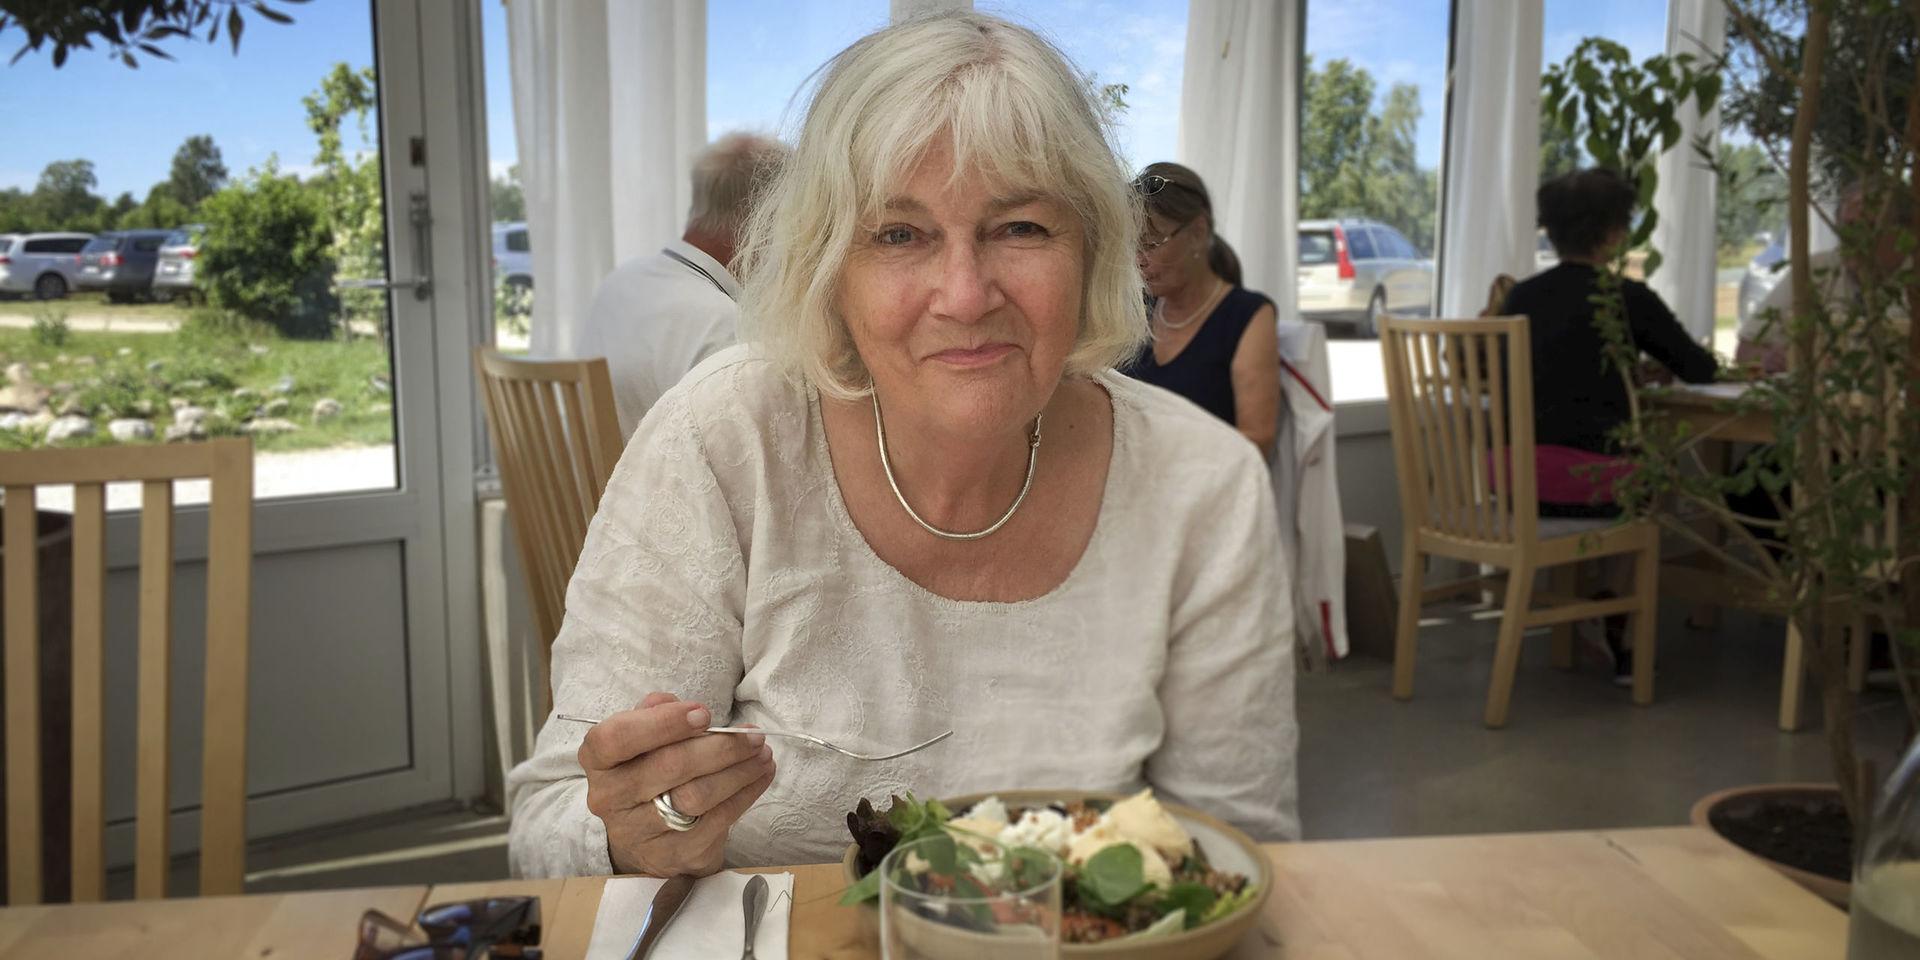 Det är inte svårt att laga god mat, menar matskribenten Anna Bergenström.